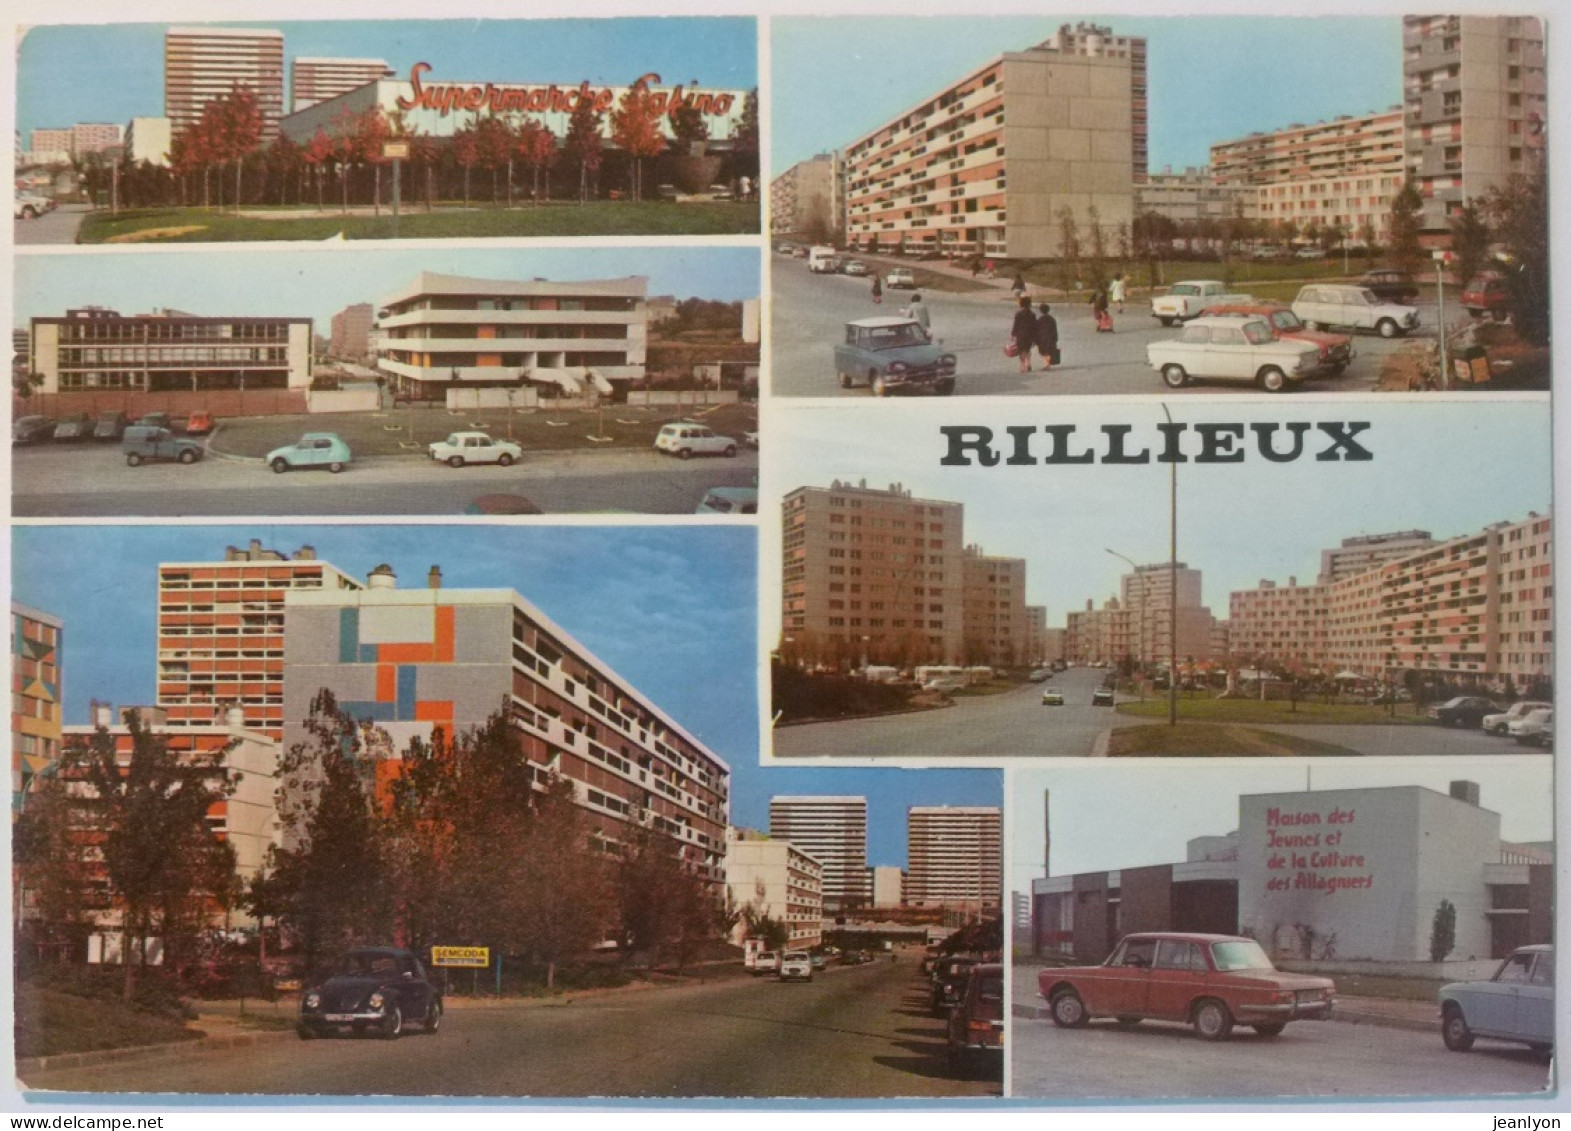 RILLIEUX LA PAPE (69/Rhône) - Supermarché Casino - Immeubles Avec Voitures - MJC Allagniers - HLM Panneau Semcoda - Rillieux La Pape